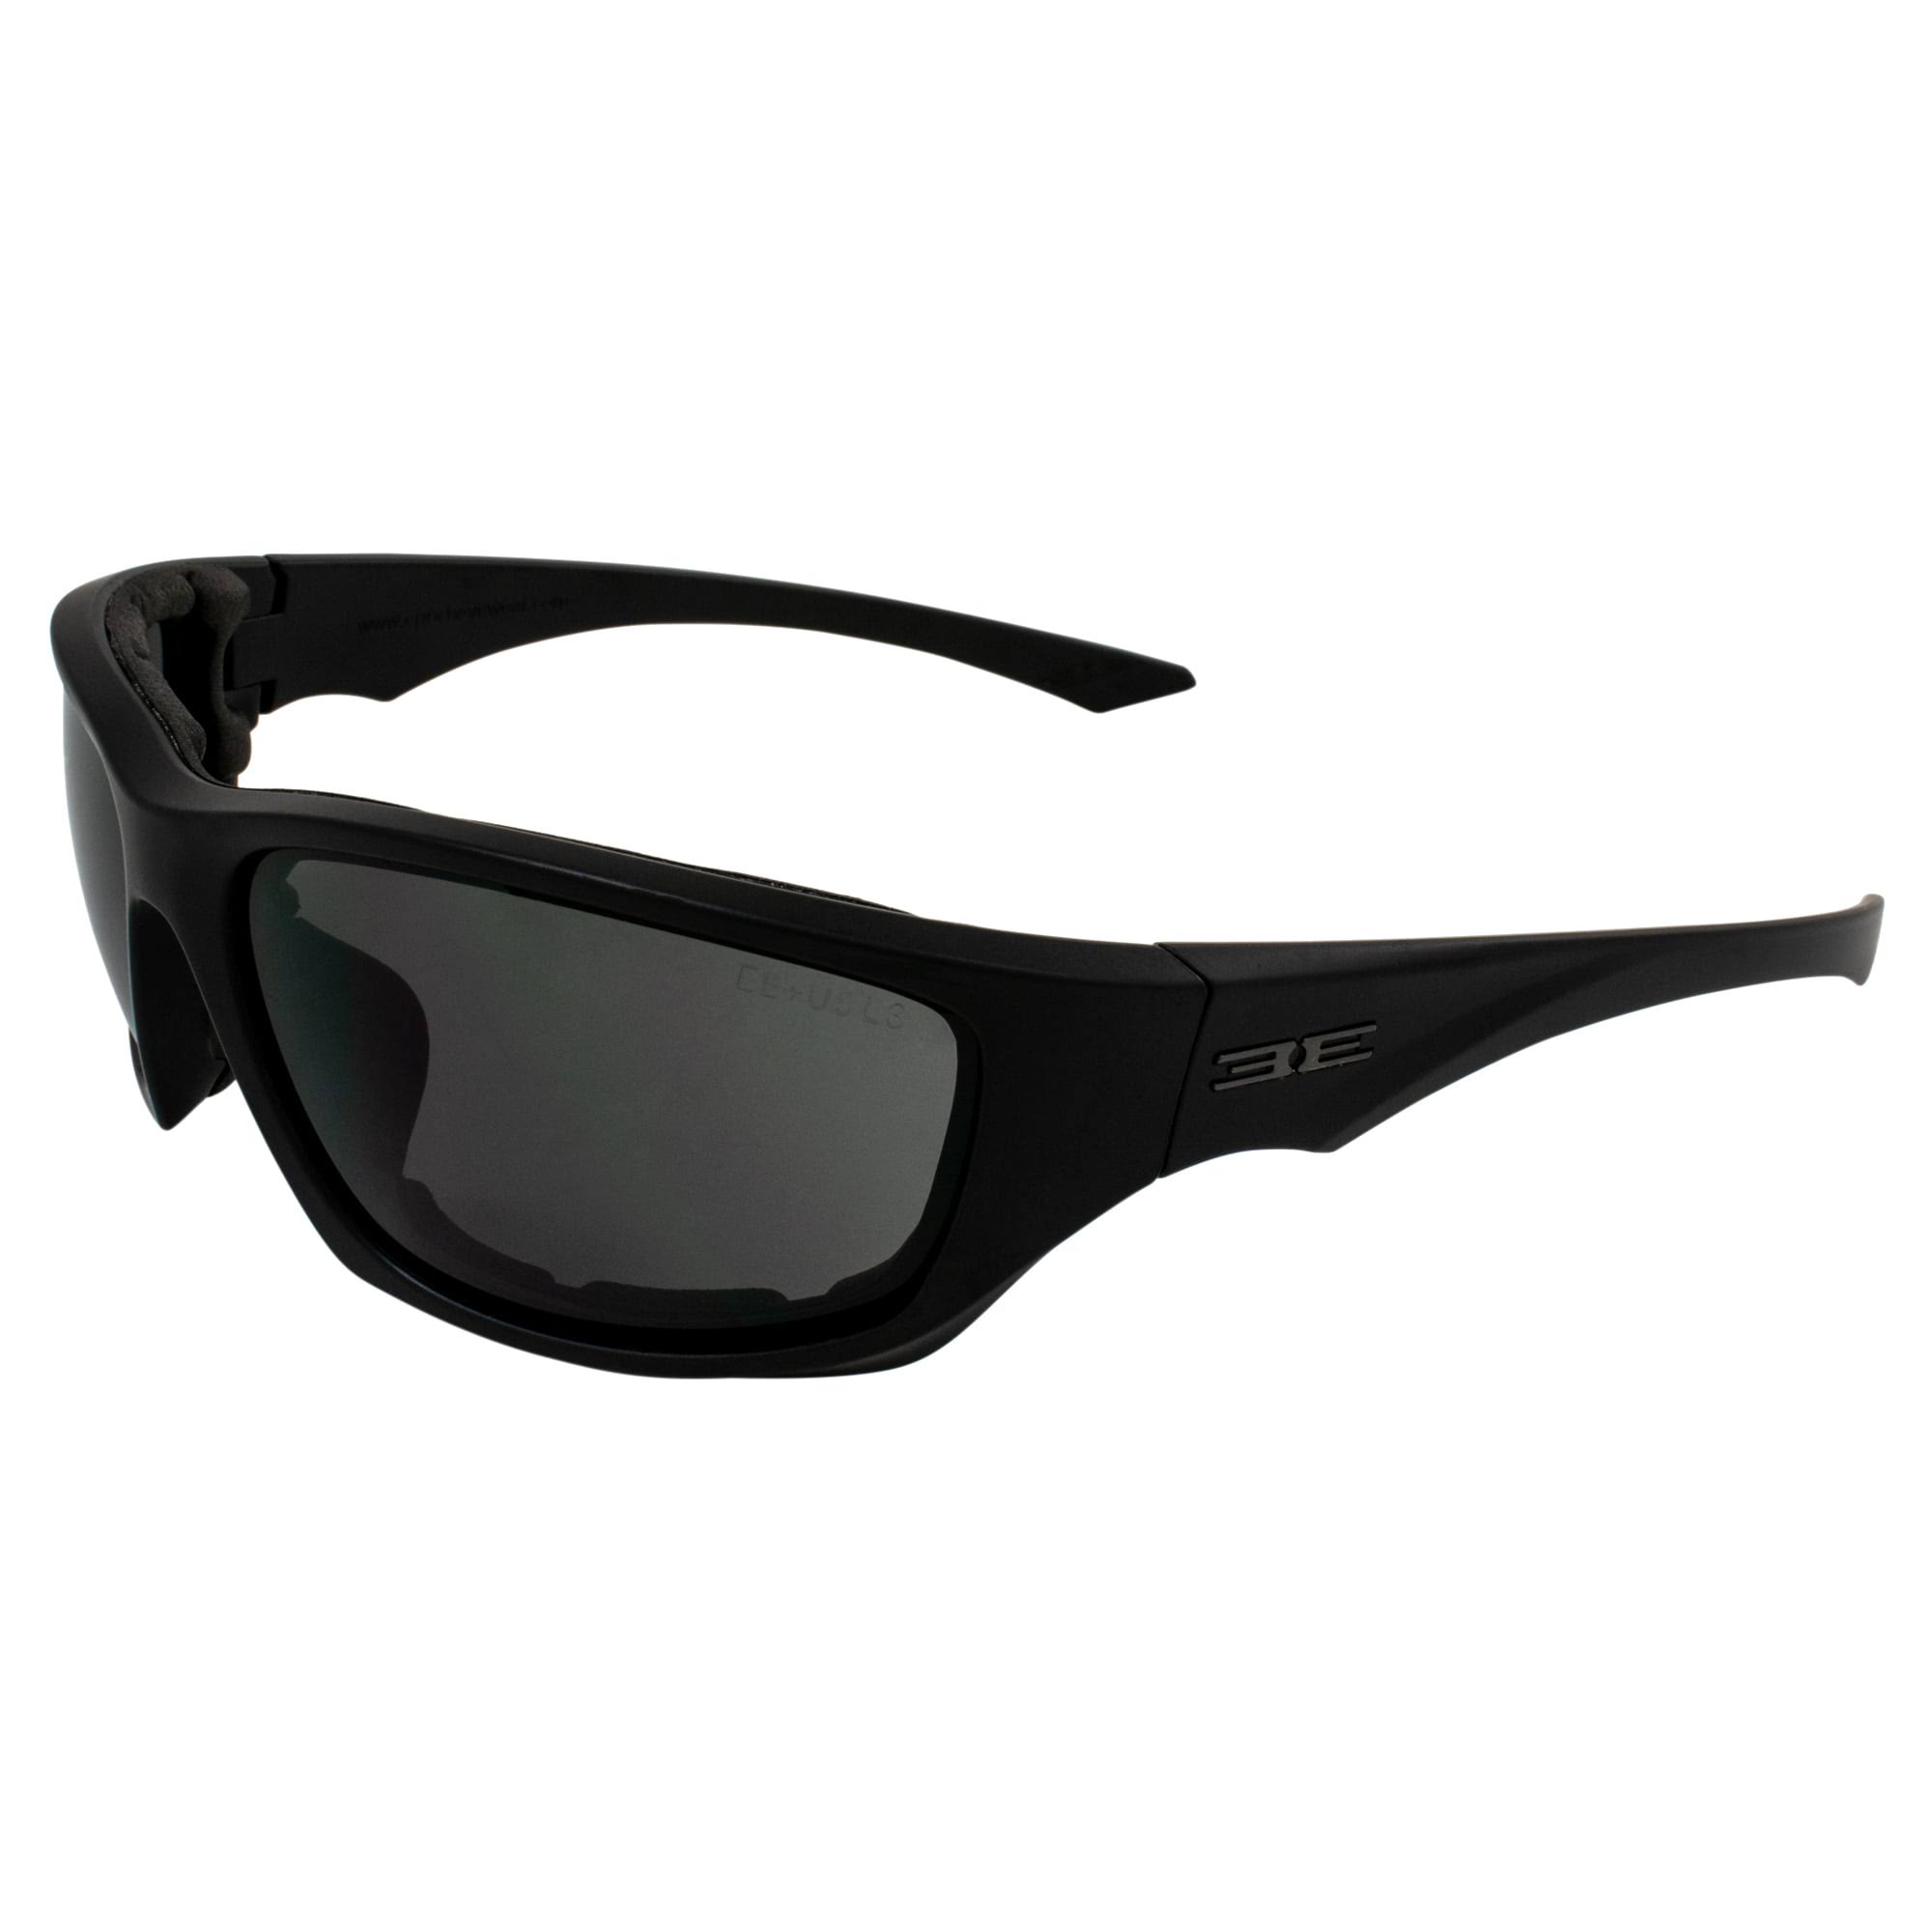 Epoch Eyewear Foam 3 Sunglasses Black - Smoke